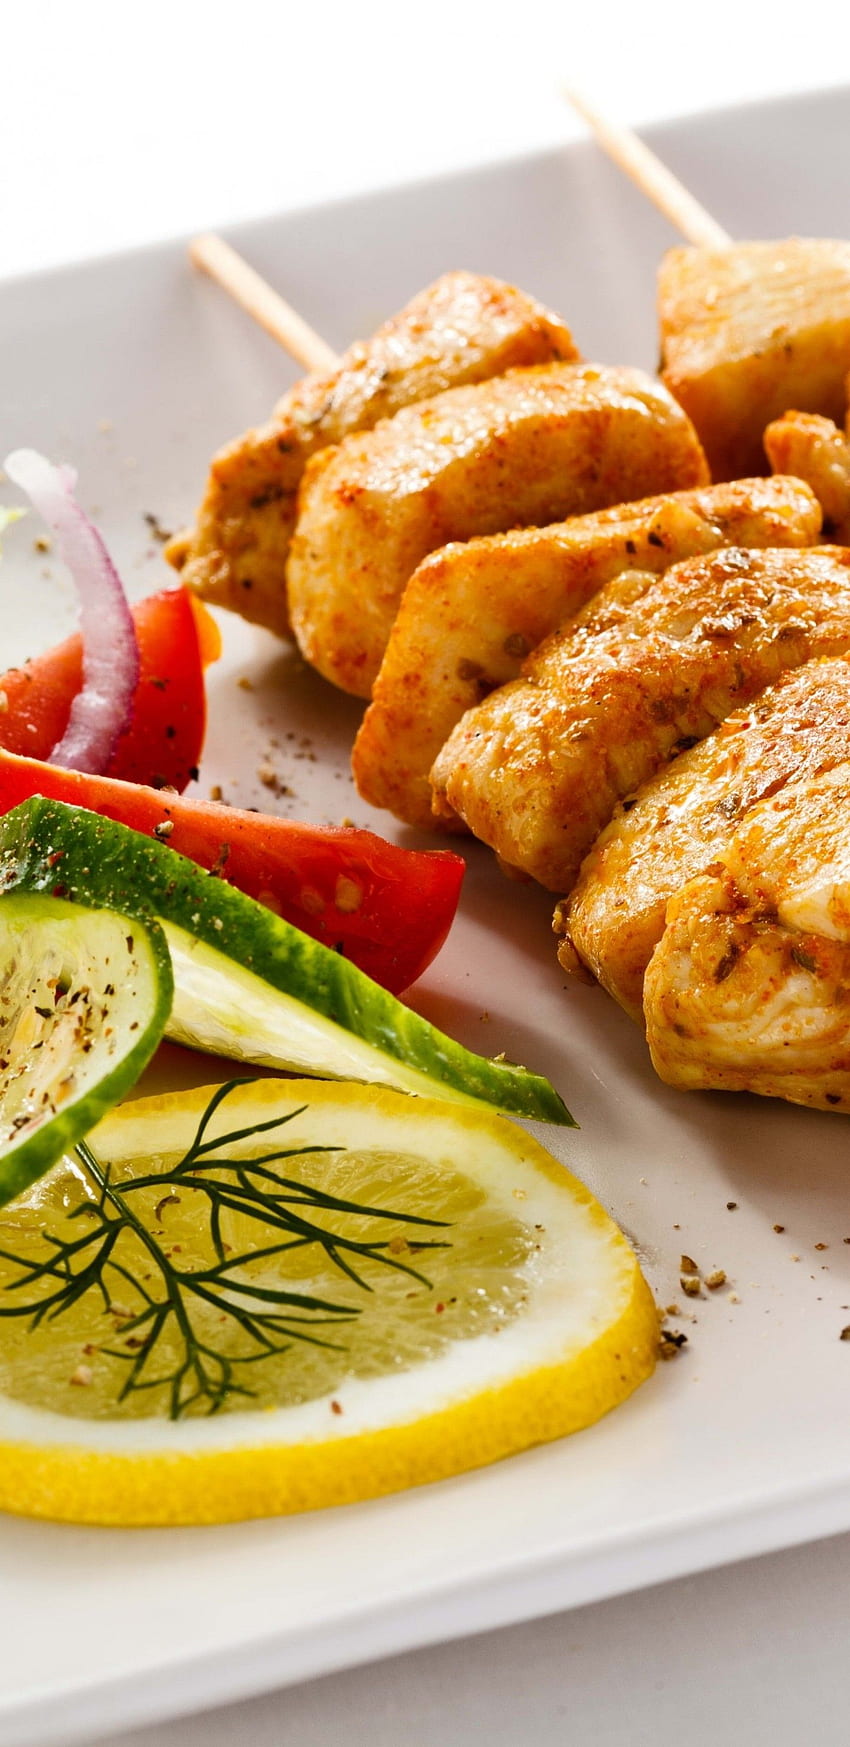 Chicken Kebab, Türkisches Essen, Zitrone, Tomate für Samsung Galaxy S9, Note 9, S8, S8+, Google Pixel 3 XL HD-Handy-Hintergrundbild